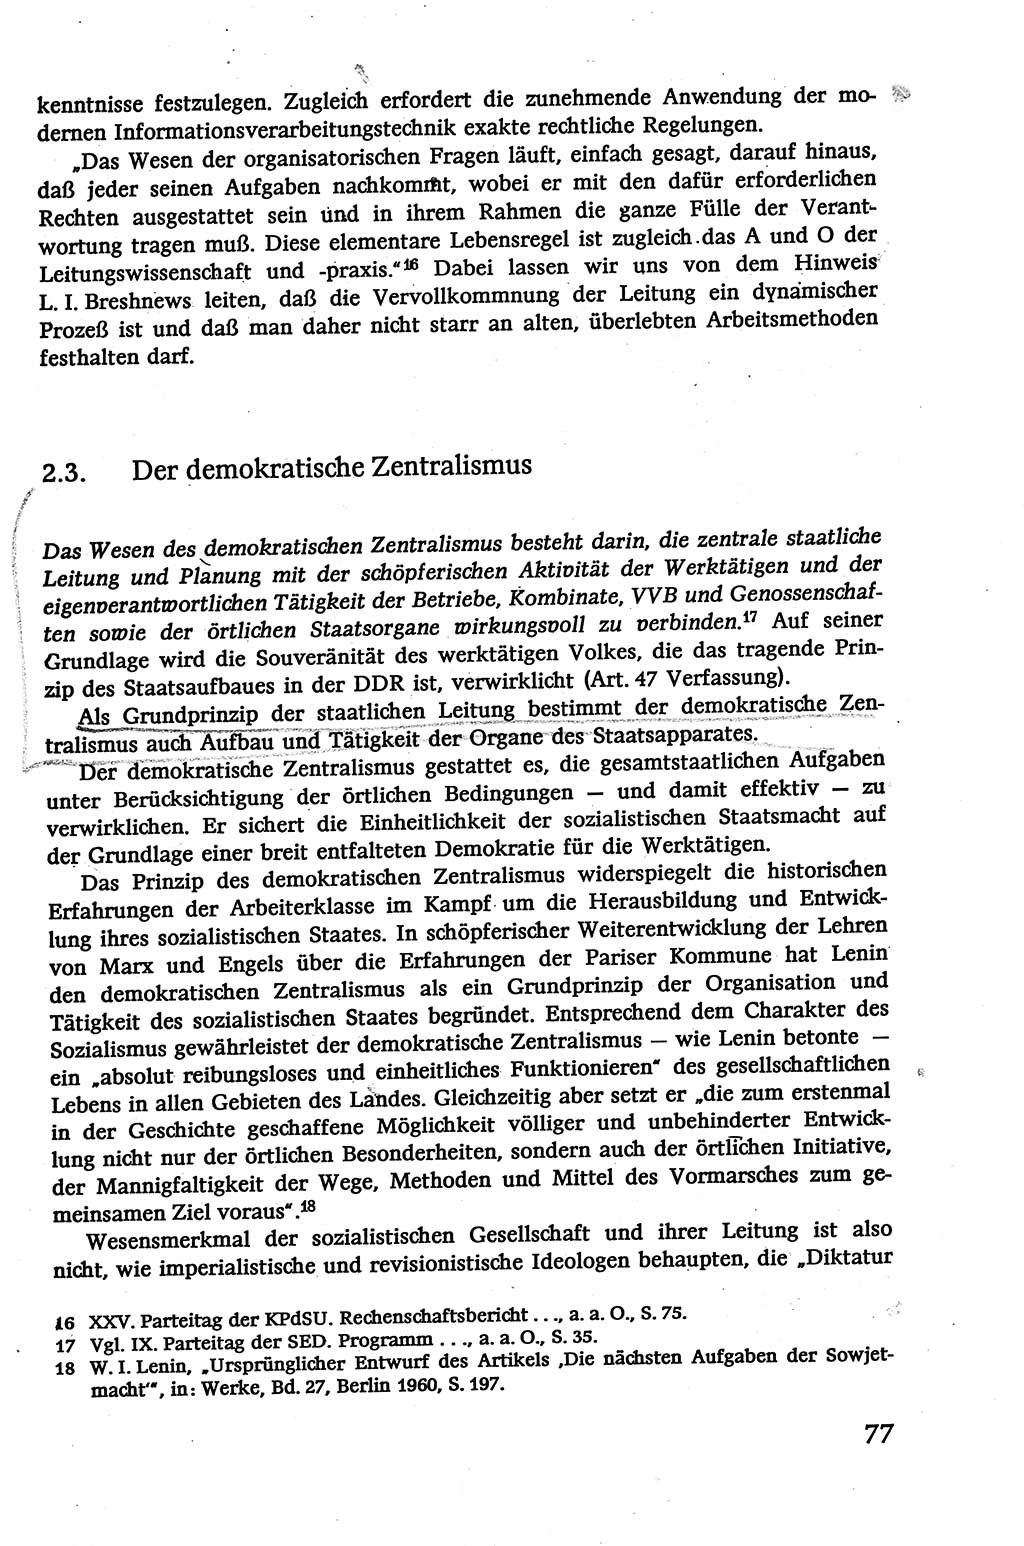 Verwaltungsrecht [Deutsche Demokratische Republik (DDR)], Lehrbuch 1979, Seite 77 (Verw.-R. DDR Lb. 1979, S. 77)